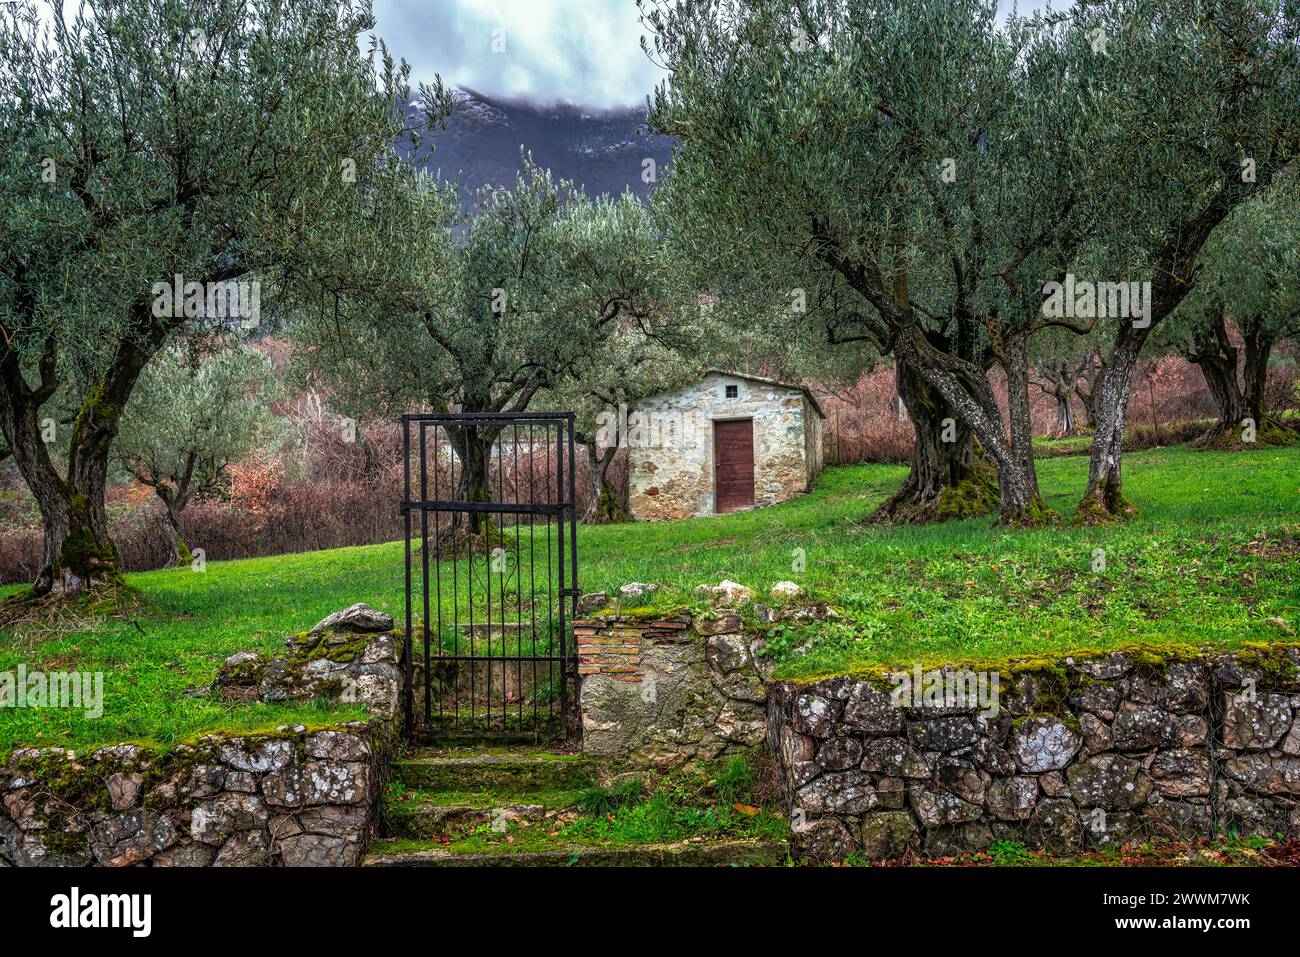 Ein Landhaus in einem Olivenhain, ein grüner Rasen und ein Tor ohne Zaun. Abruzzen, Italien, Europa Stockfoto